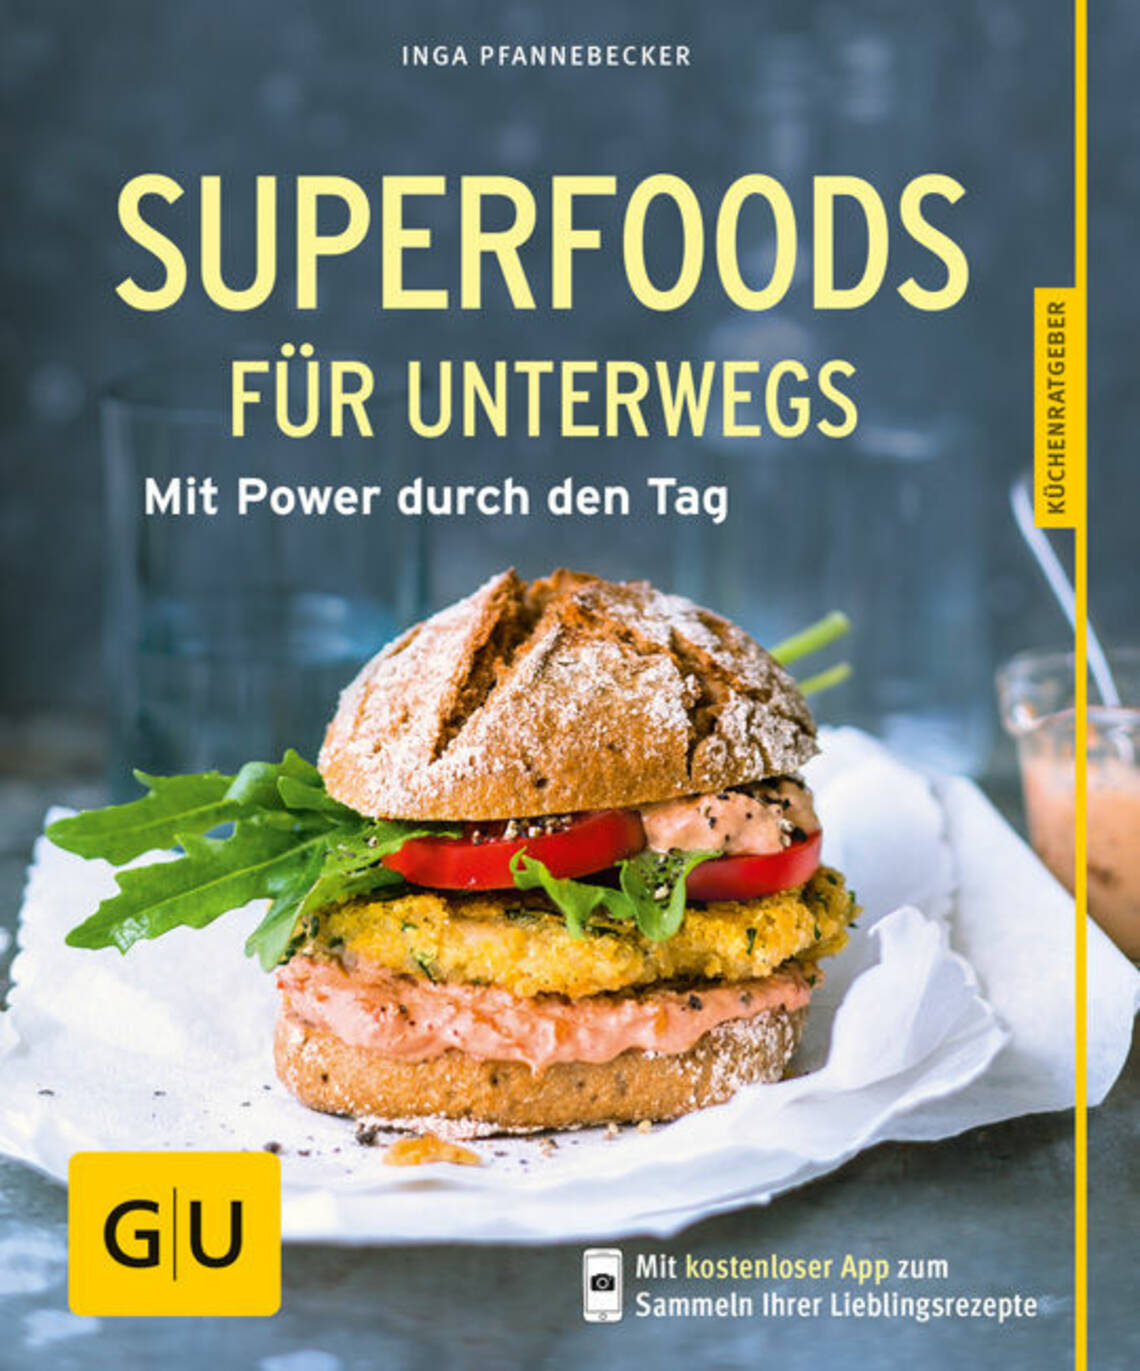 Superfoods für unterwegs von Inga Pfannebecker, Dagmar von Cramm, Inga Pfannebecker, Michael König